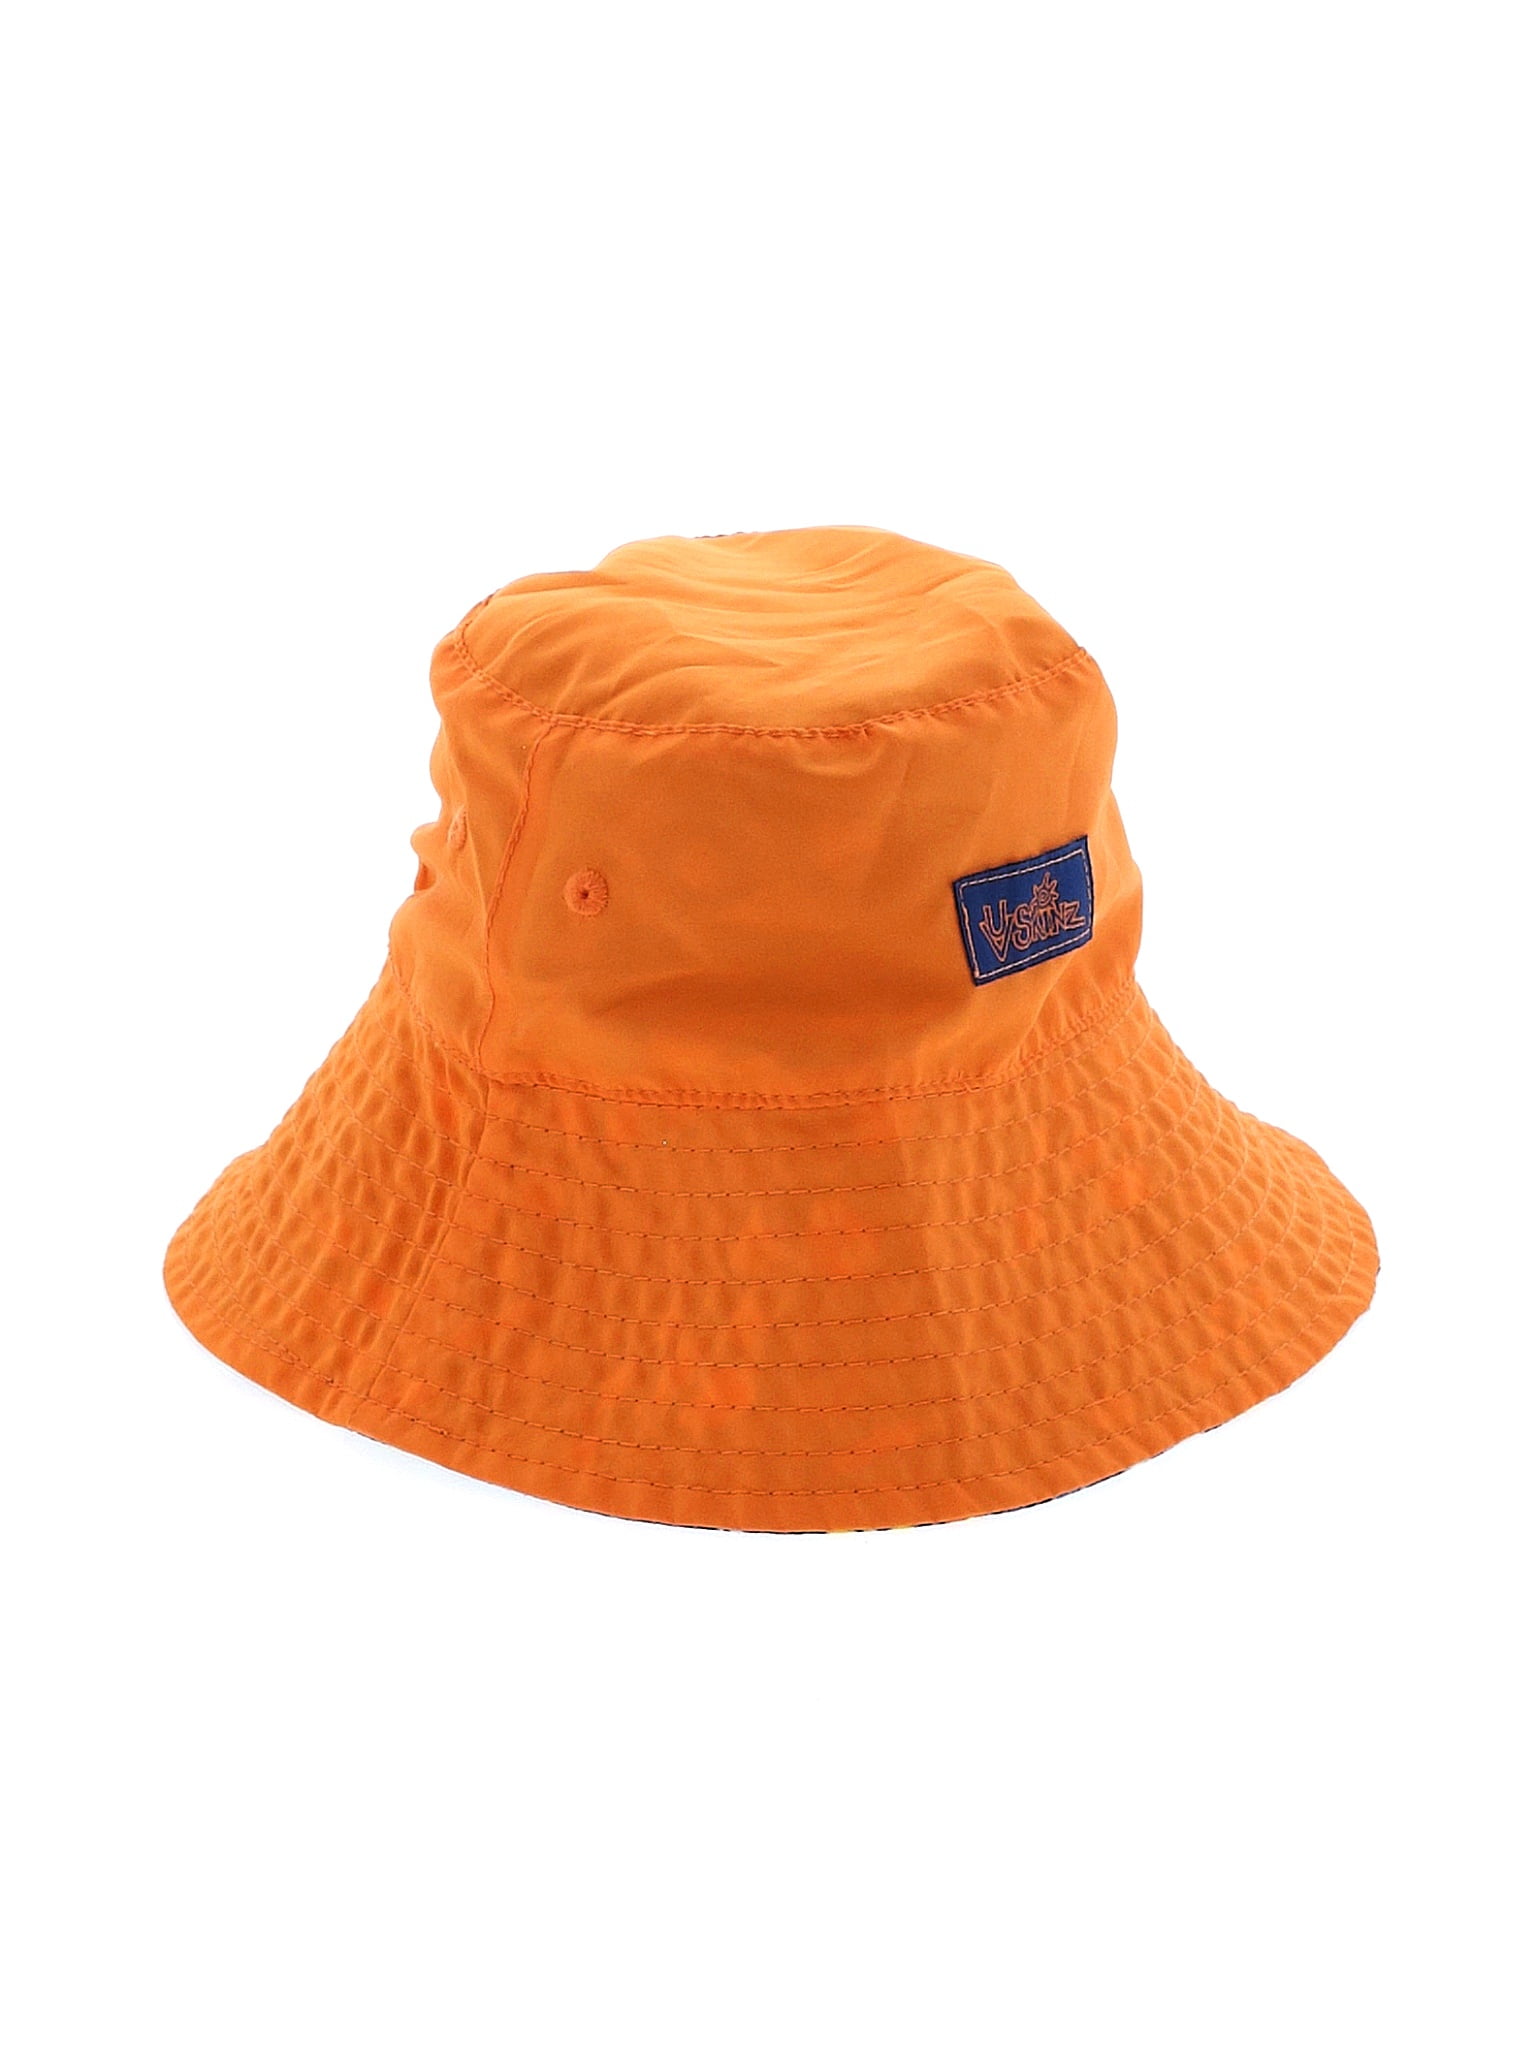 UV Skinz Boys Orange Bucket Hat 12-18 Months